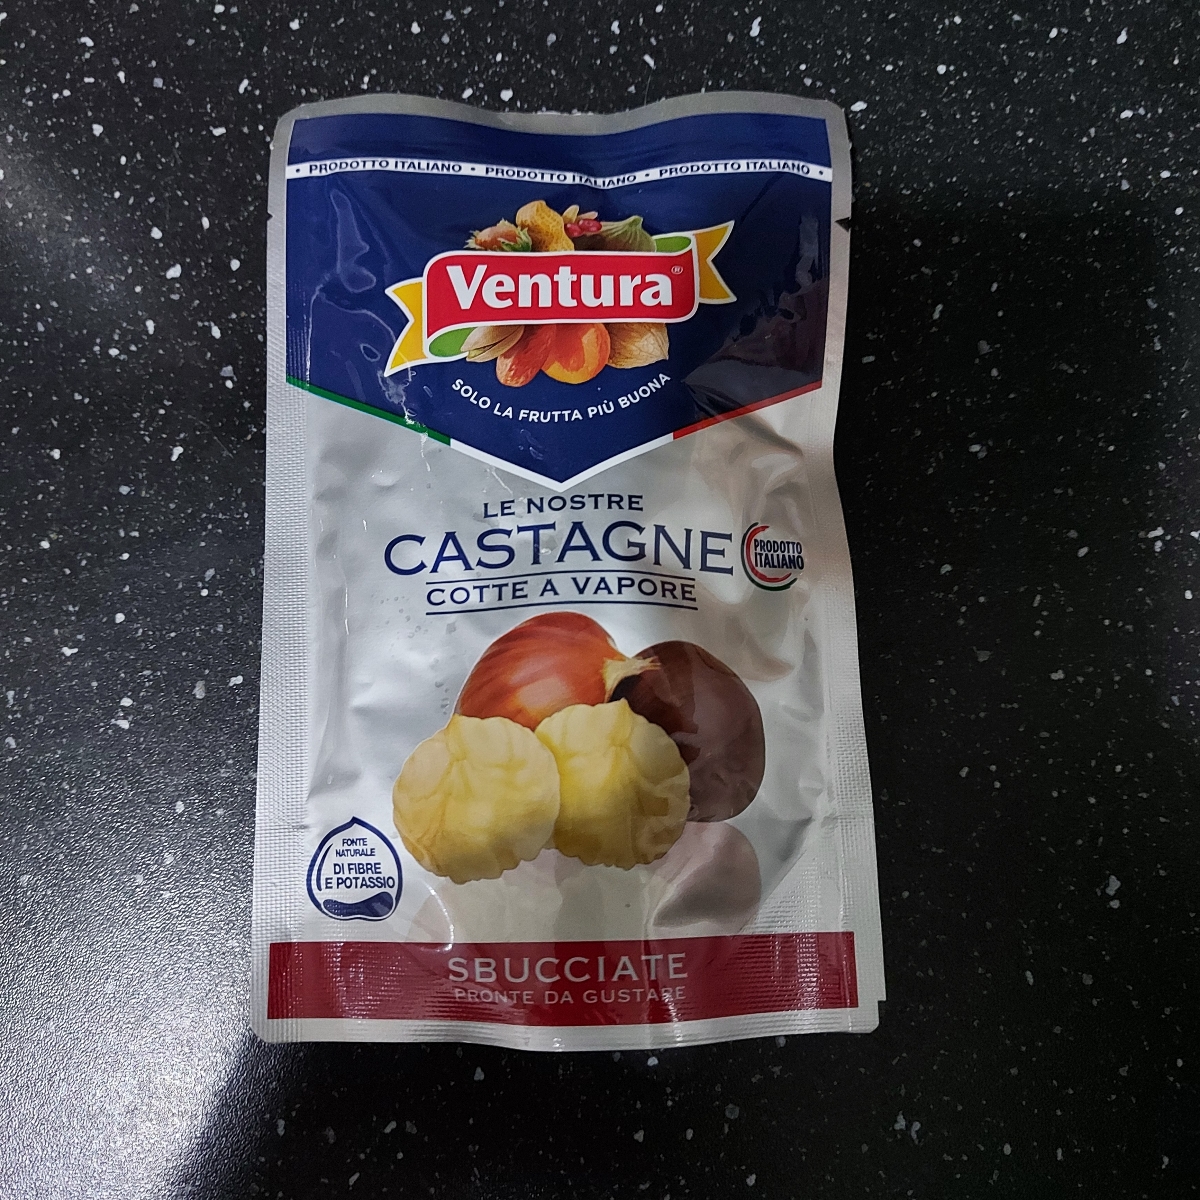 Ventura Castagne cotte al vapore Review